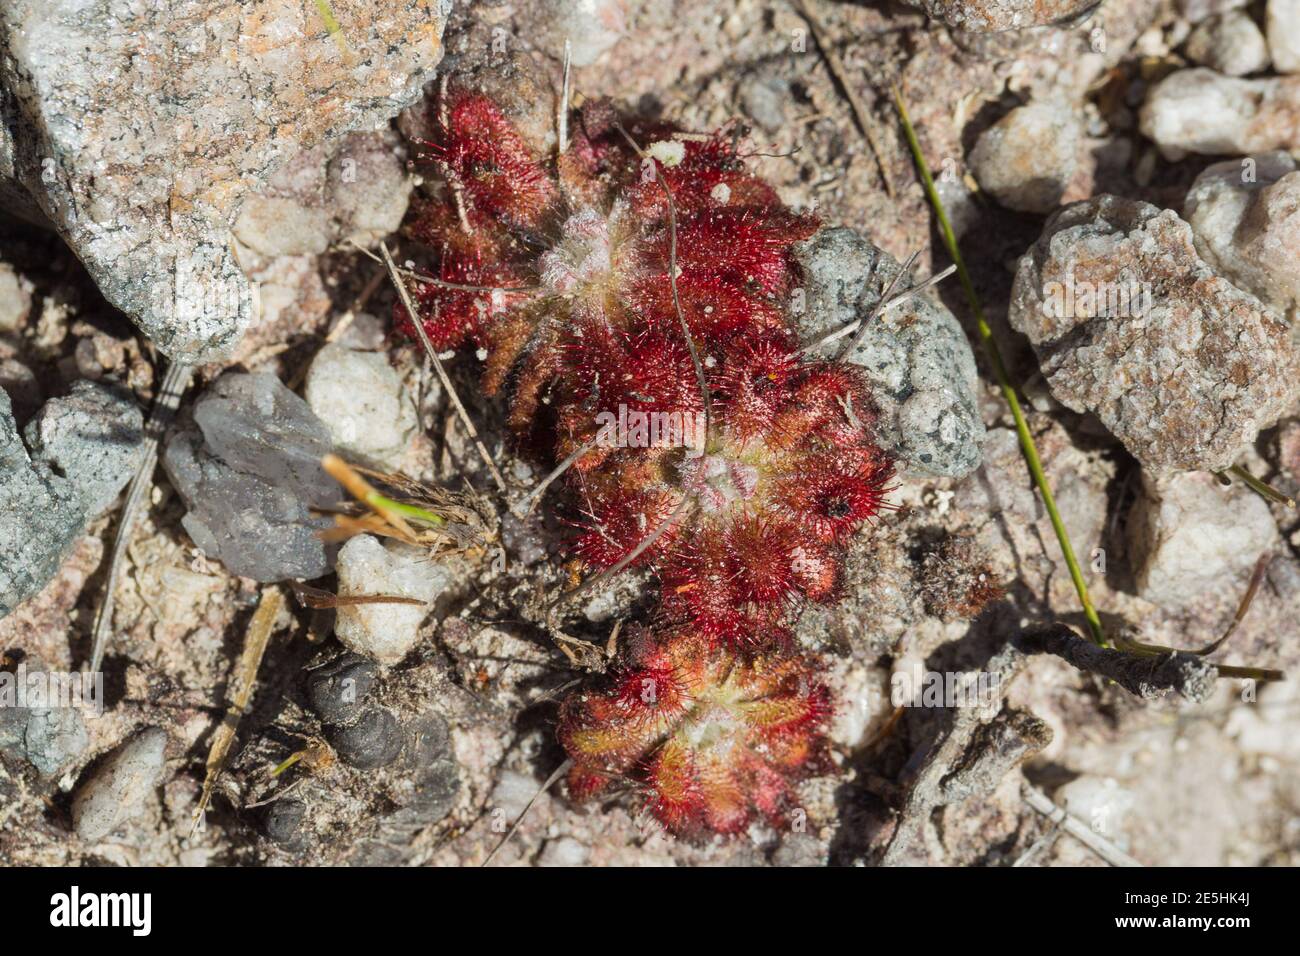 Grupo de plantas bonitas de Drosera spirocalyx, una planta carnívora, en hábitat natural en el Parque Nacional Serra do CIPO en Minas Gerais, Brasil Foto de stock